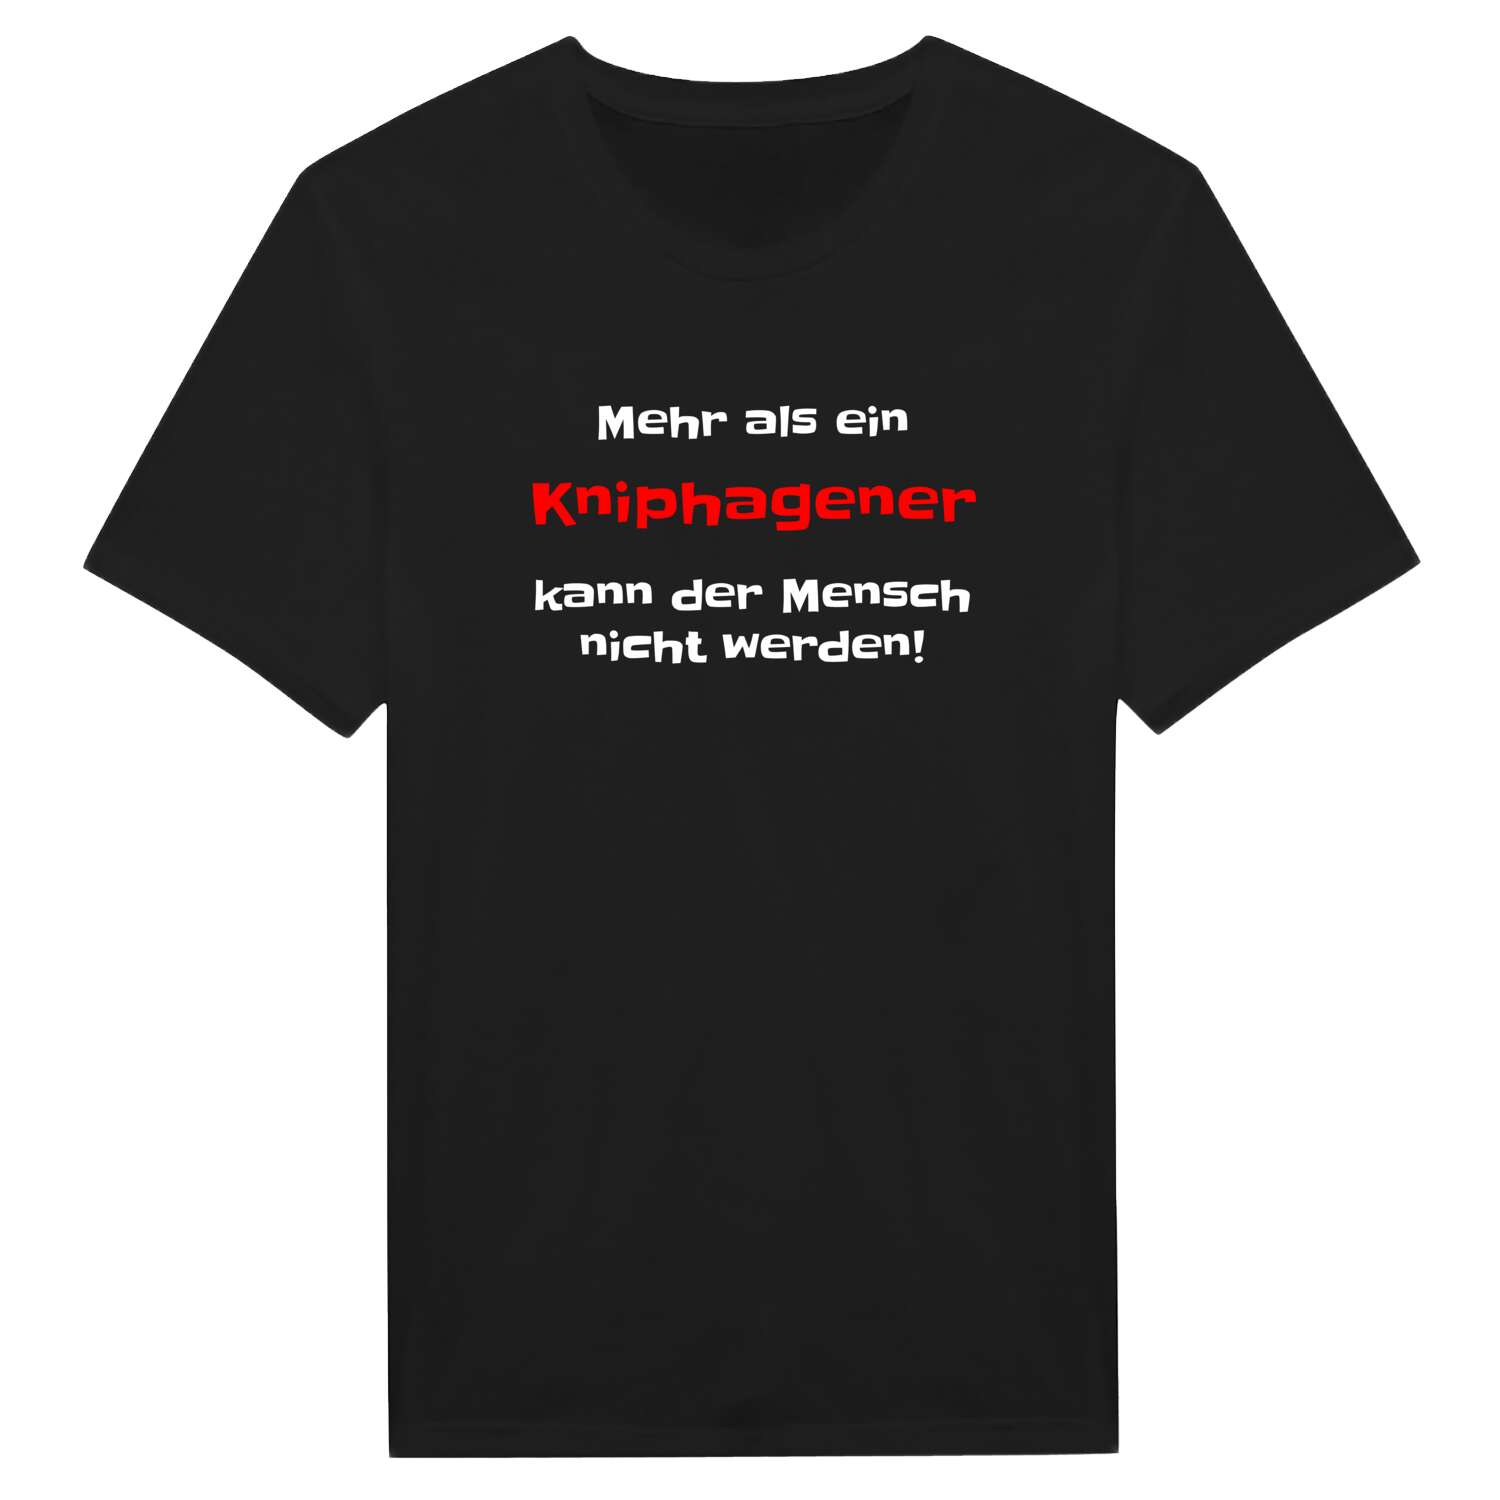 Kniphagen T-Shirt »Mehr als ein«